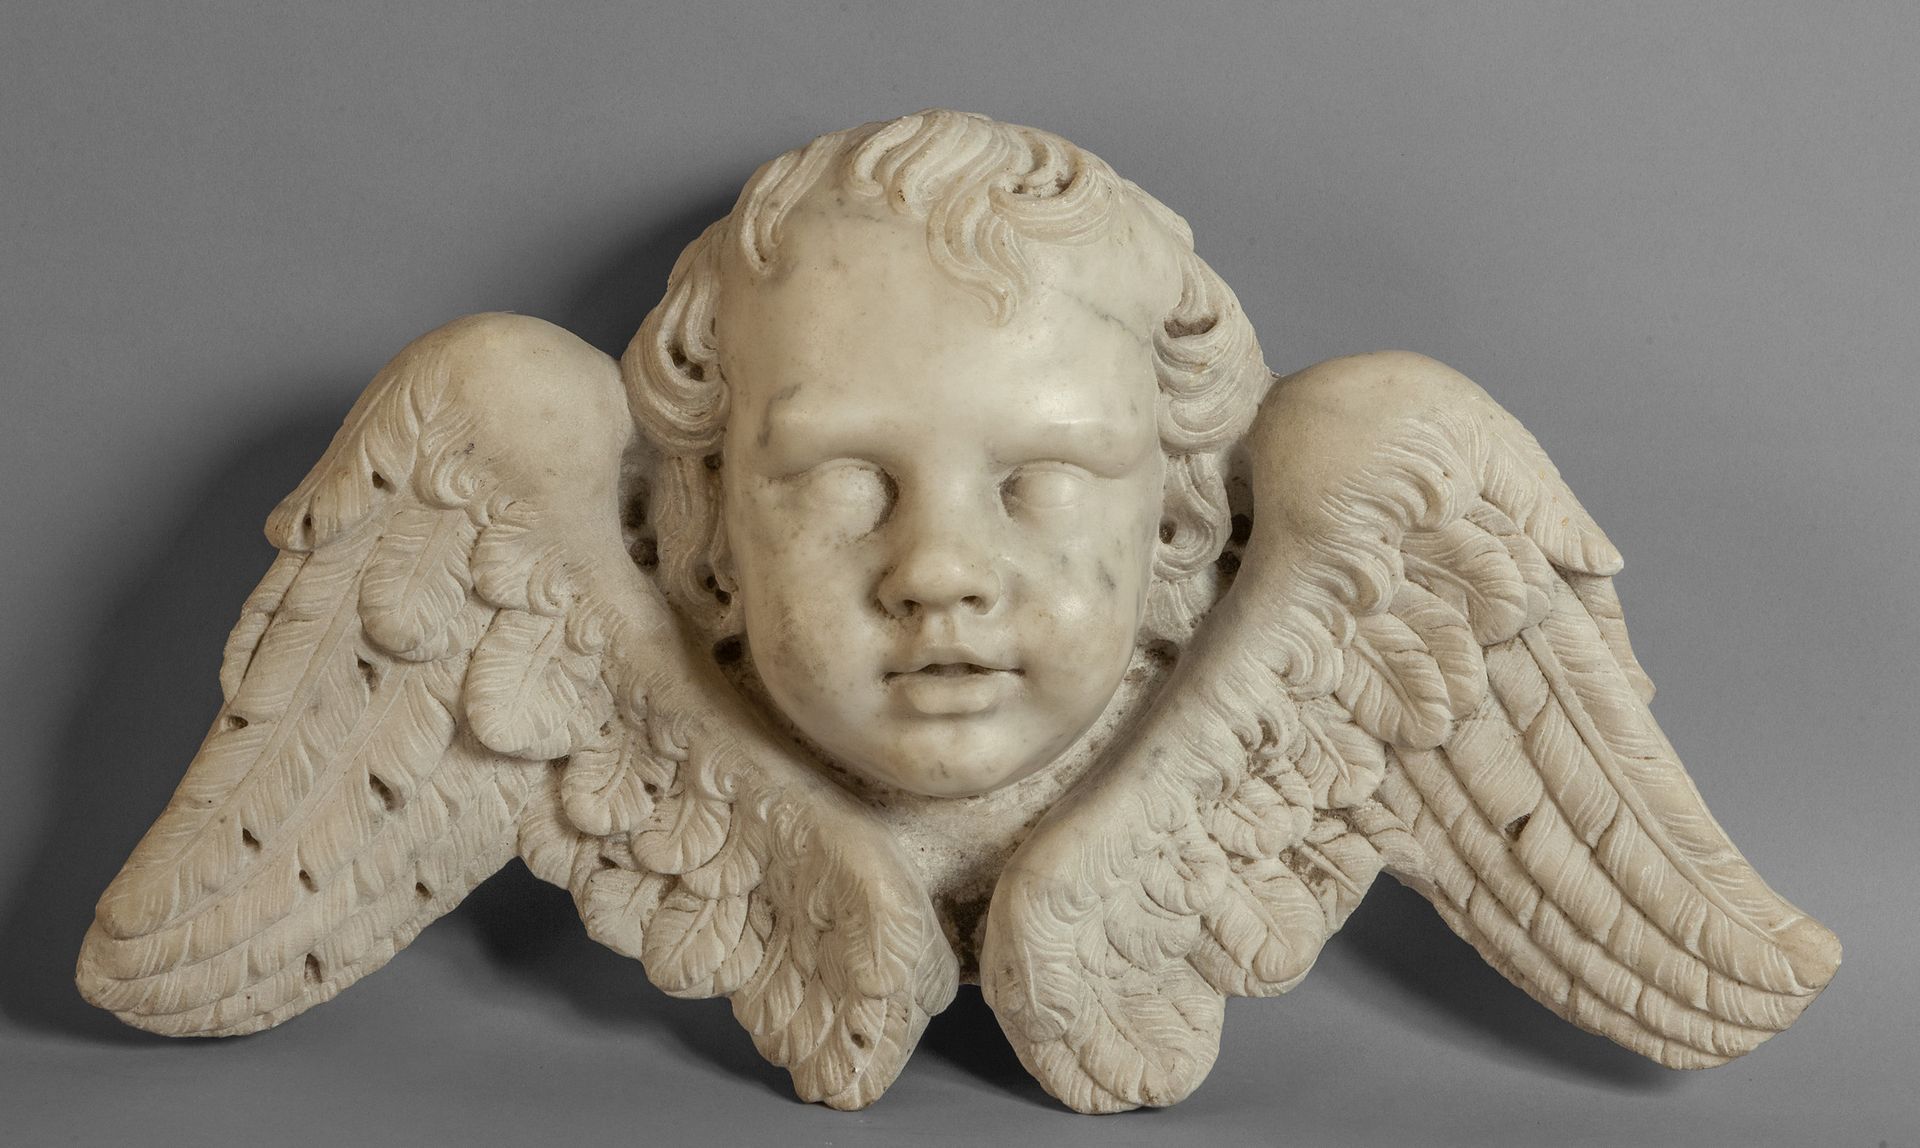 Testa di putto alata, scultura in marmo 带翅膀的普托头像，雕像大理石雕塑，罗马 17世纪
厘米。56x h. 30